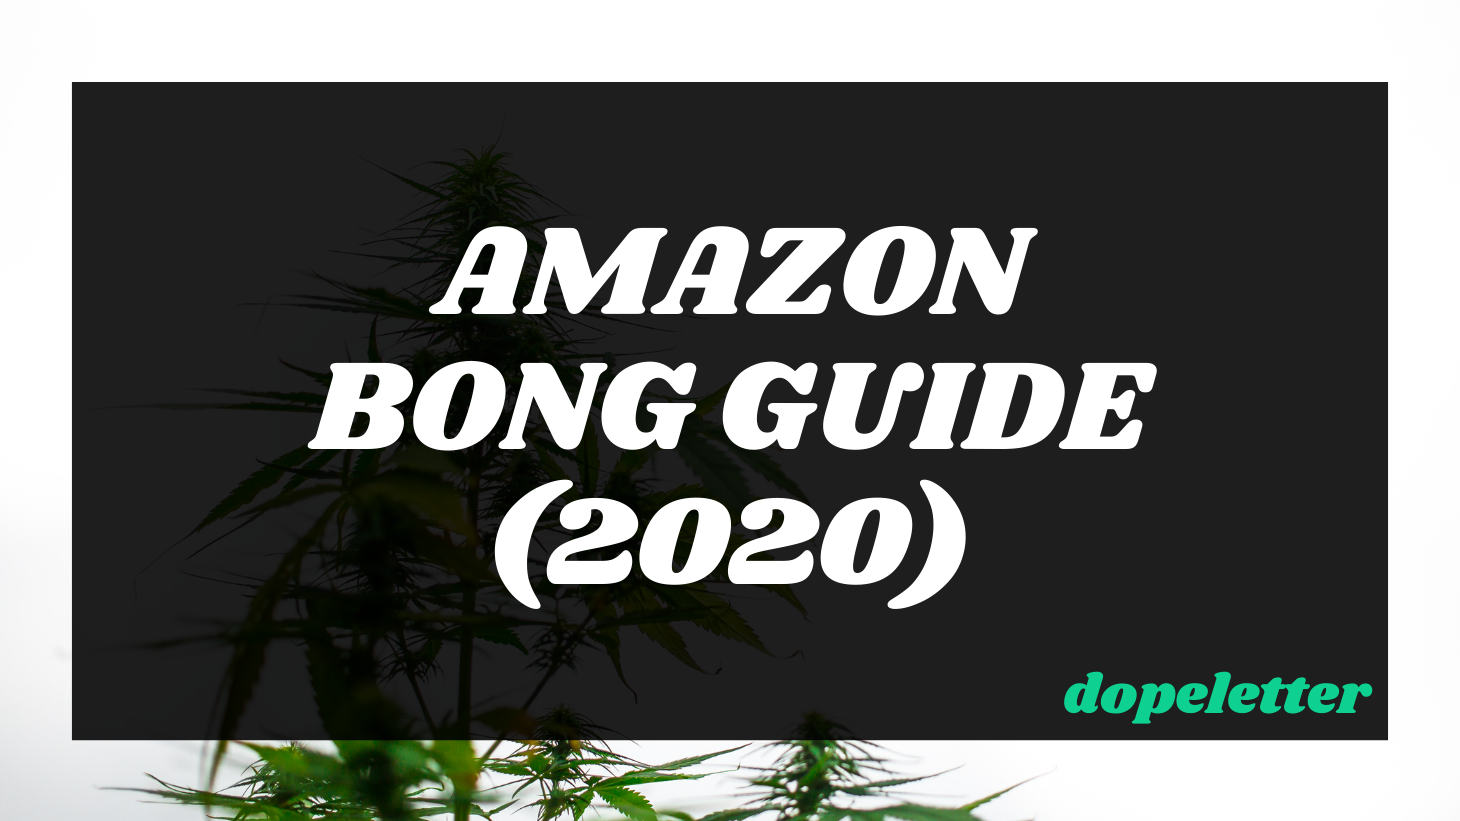 Amazon Bongs Guide Dopeletter